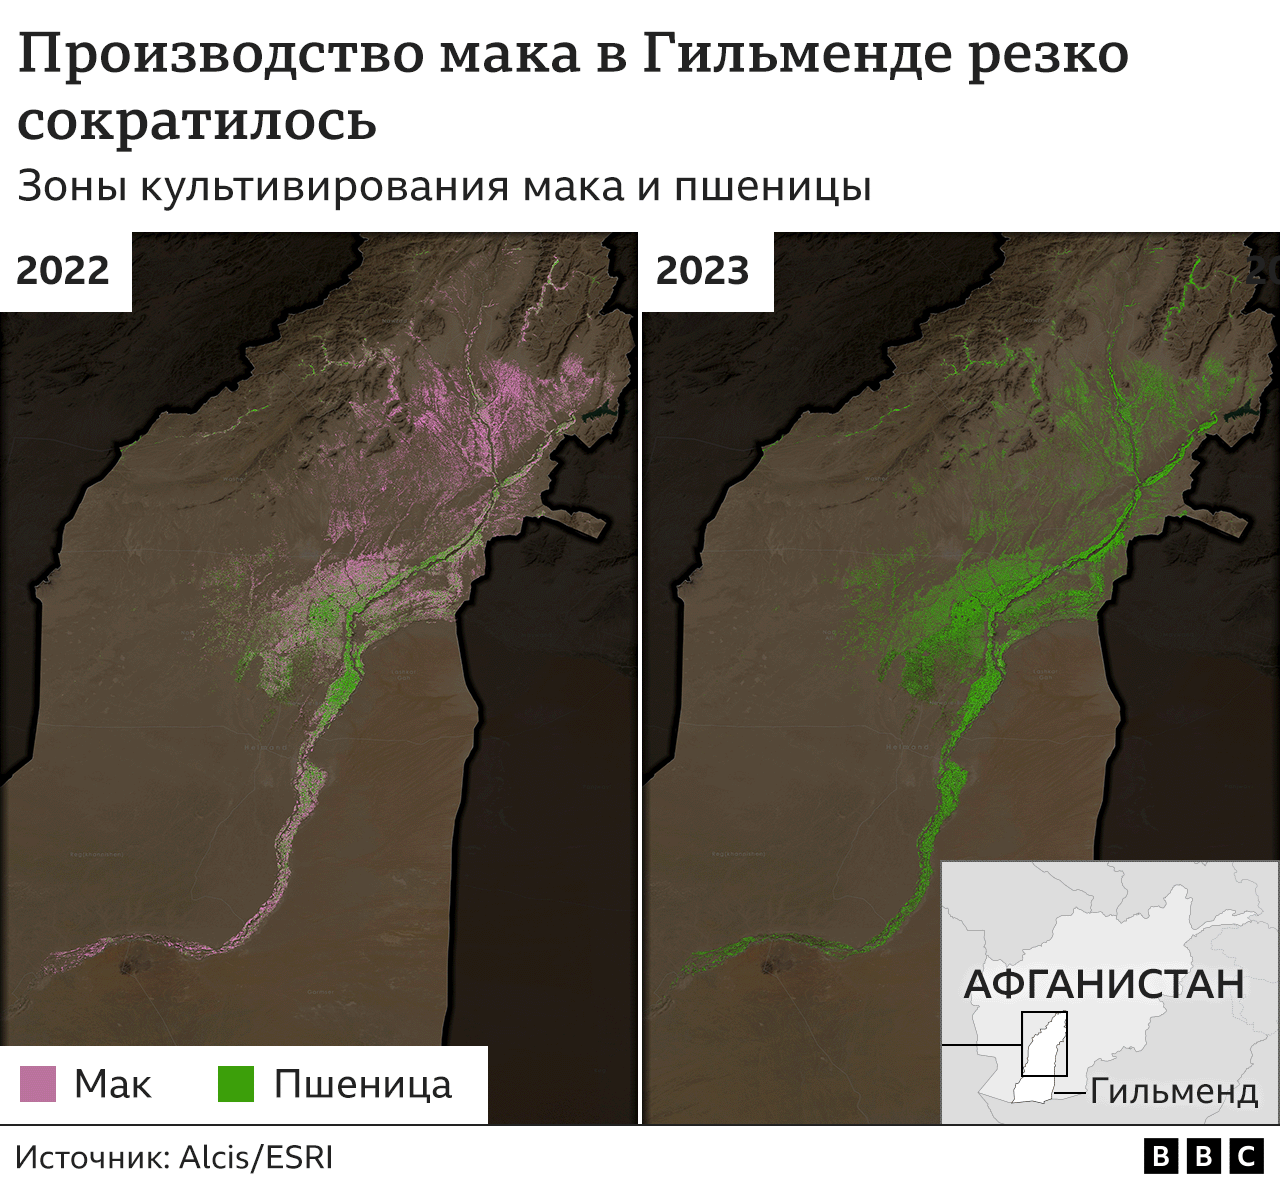 Графика: культивирование мака в Гильменде прекратилось - показаны два спутниковых снимка провинции (2022 и 2023 гг.), демонстрирующие спад в выращивании мака.